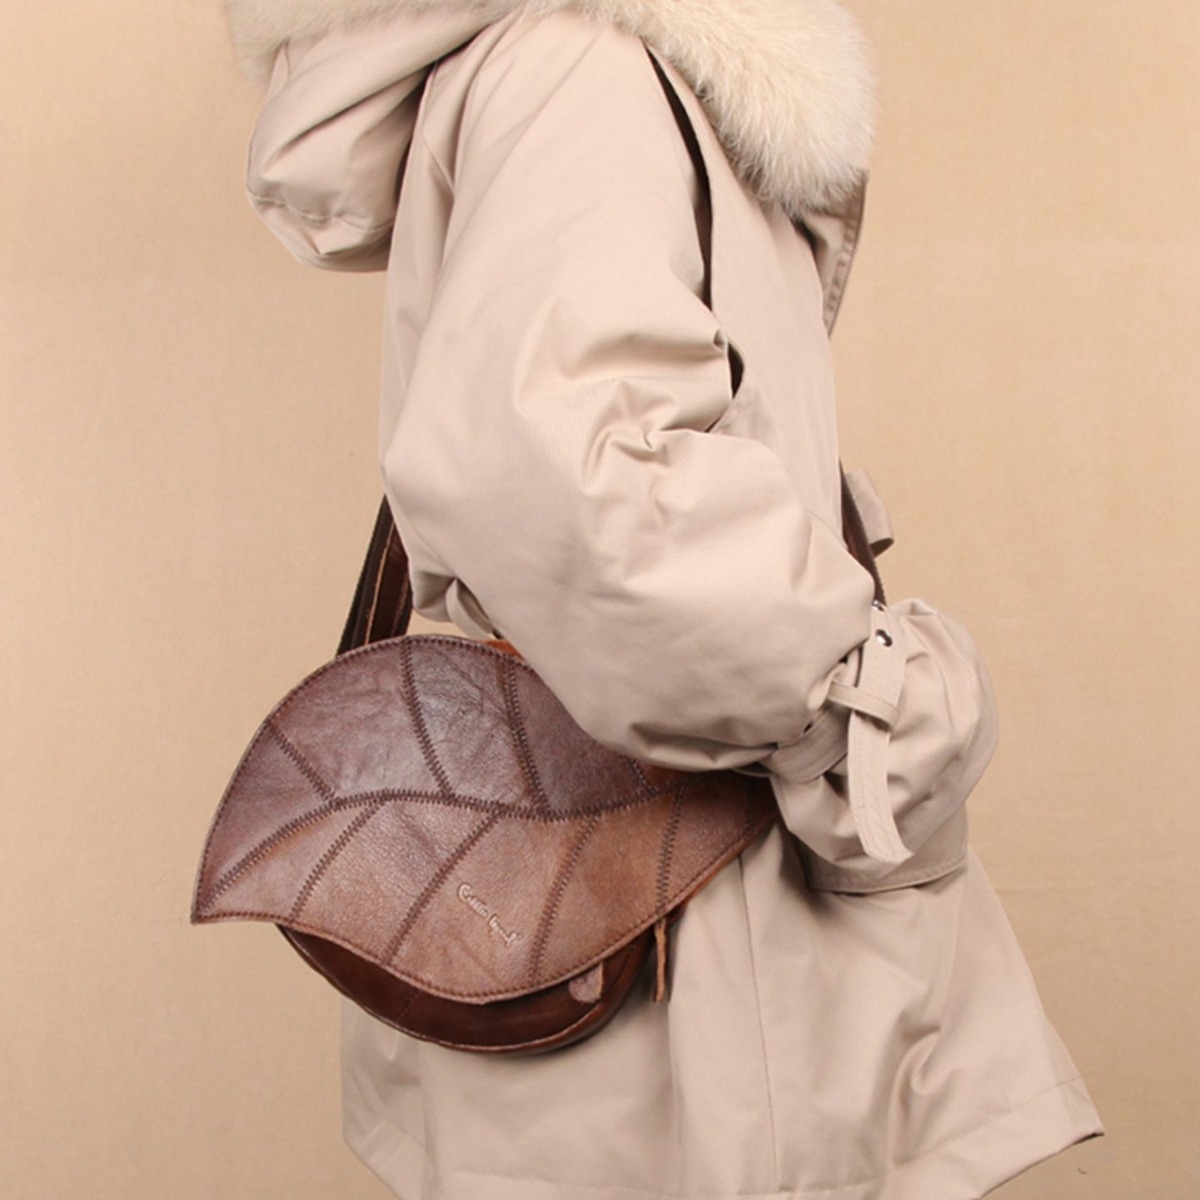 shoulder bag LV leather item bundle Brown